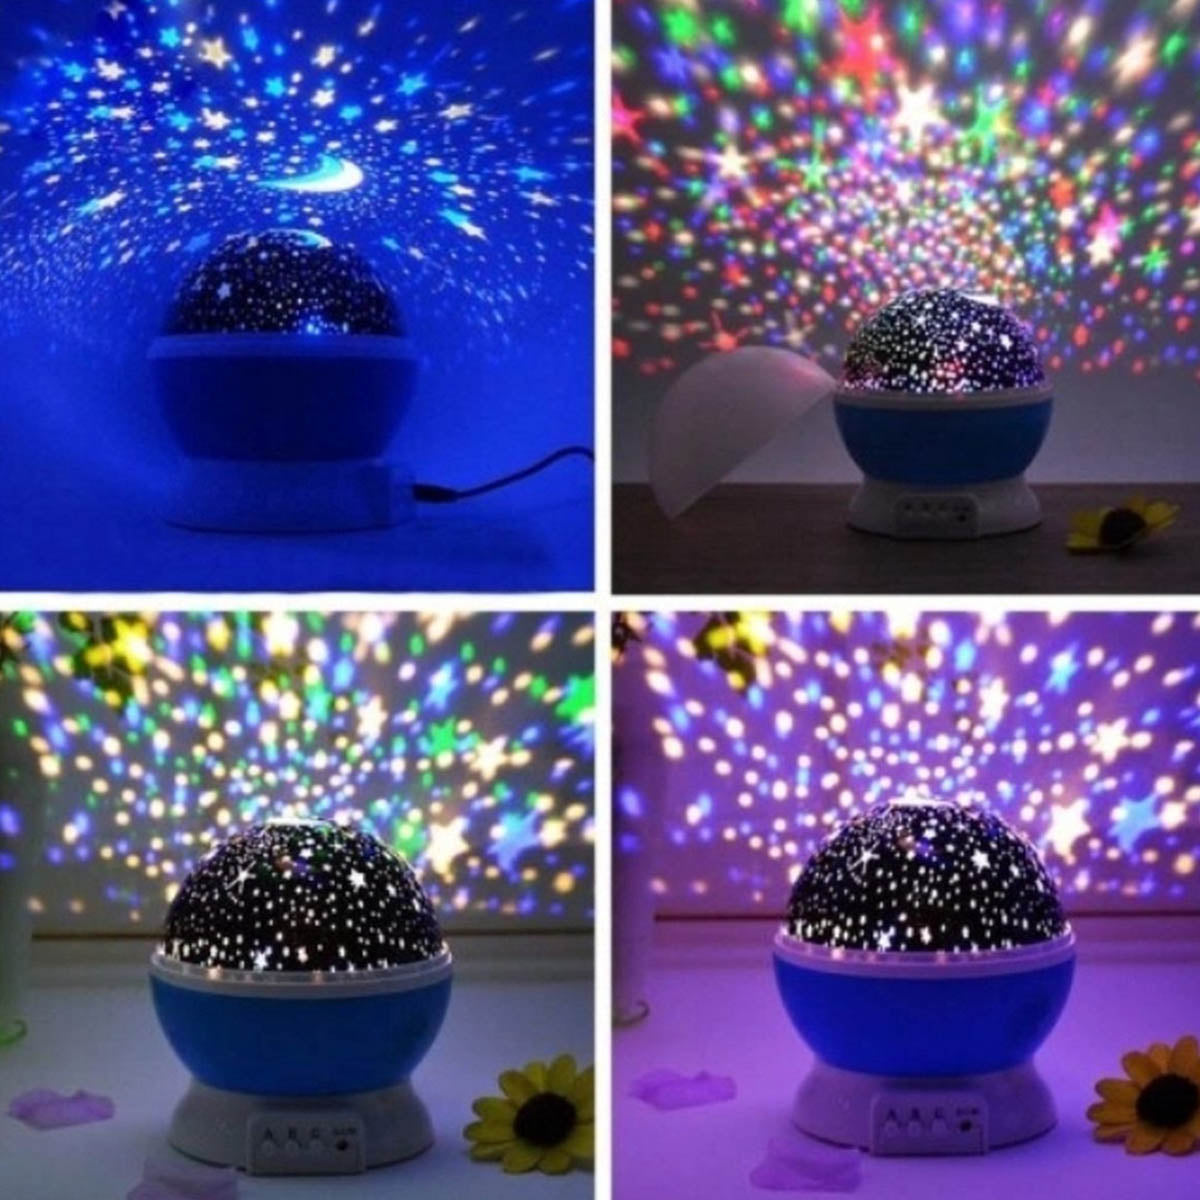 Ariko Projecteur d'étoiles rotatives Ciel étoilé - Veilleuse bébé/enfant - Lampe de projection - Chambre d'enfant - Veilleuse - Bleu